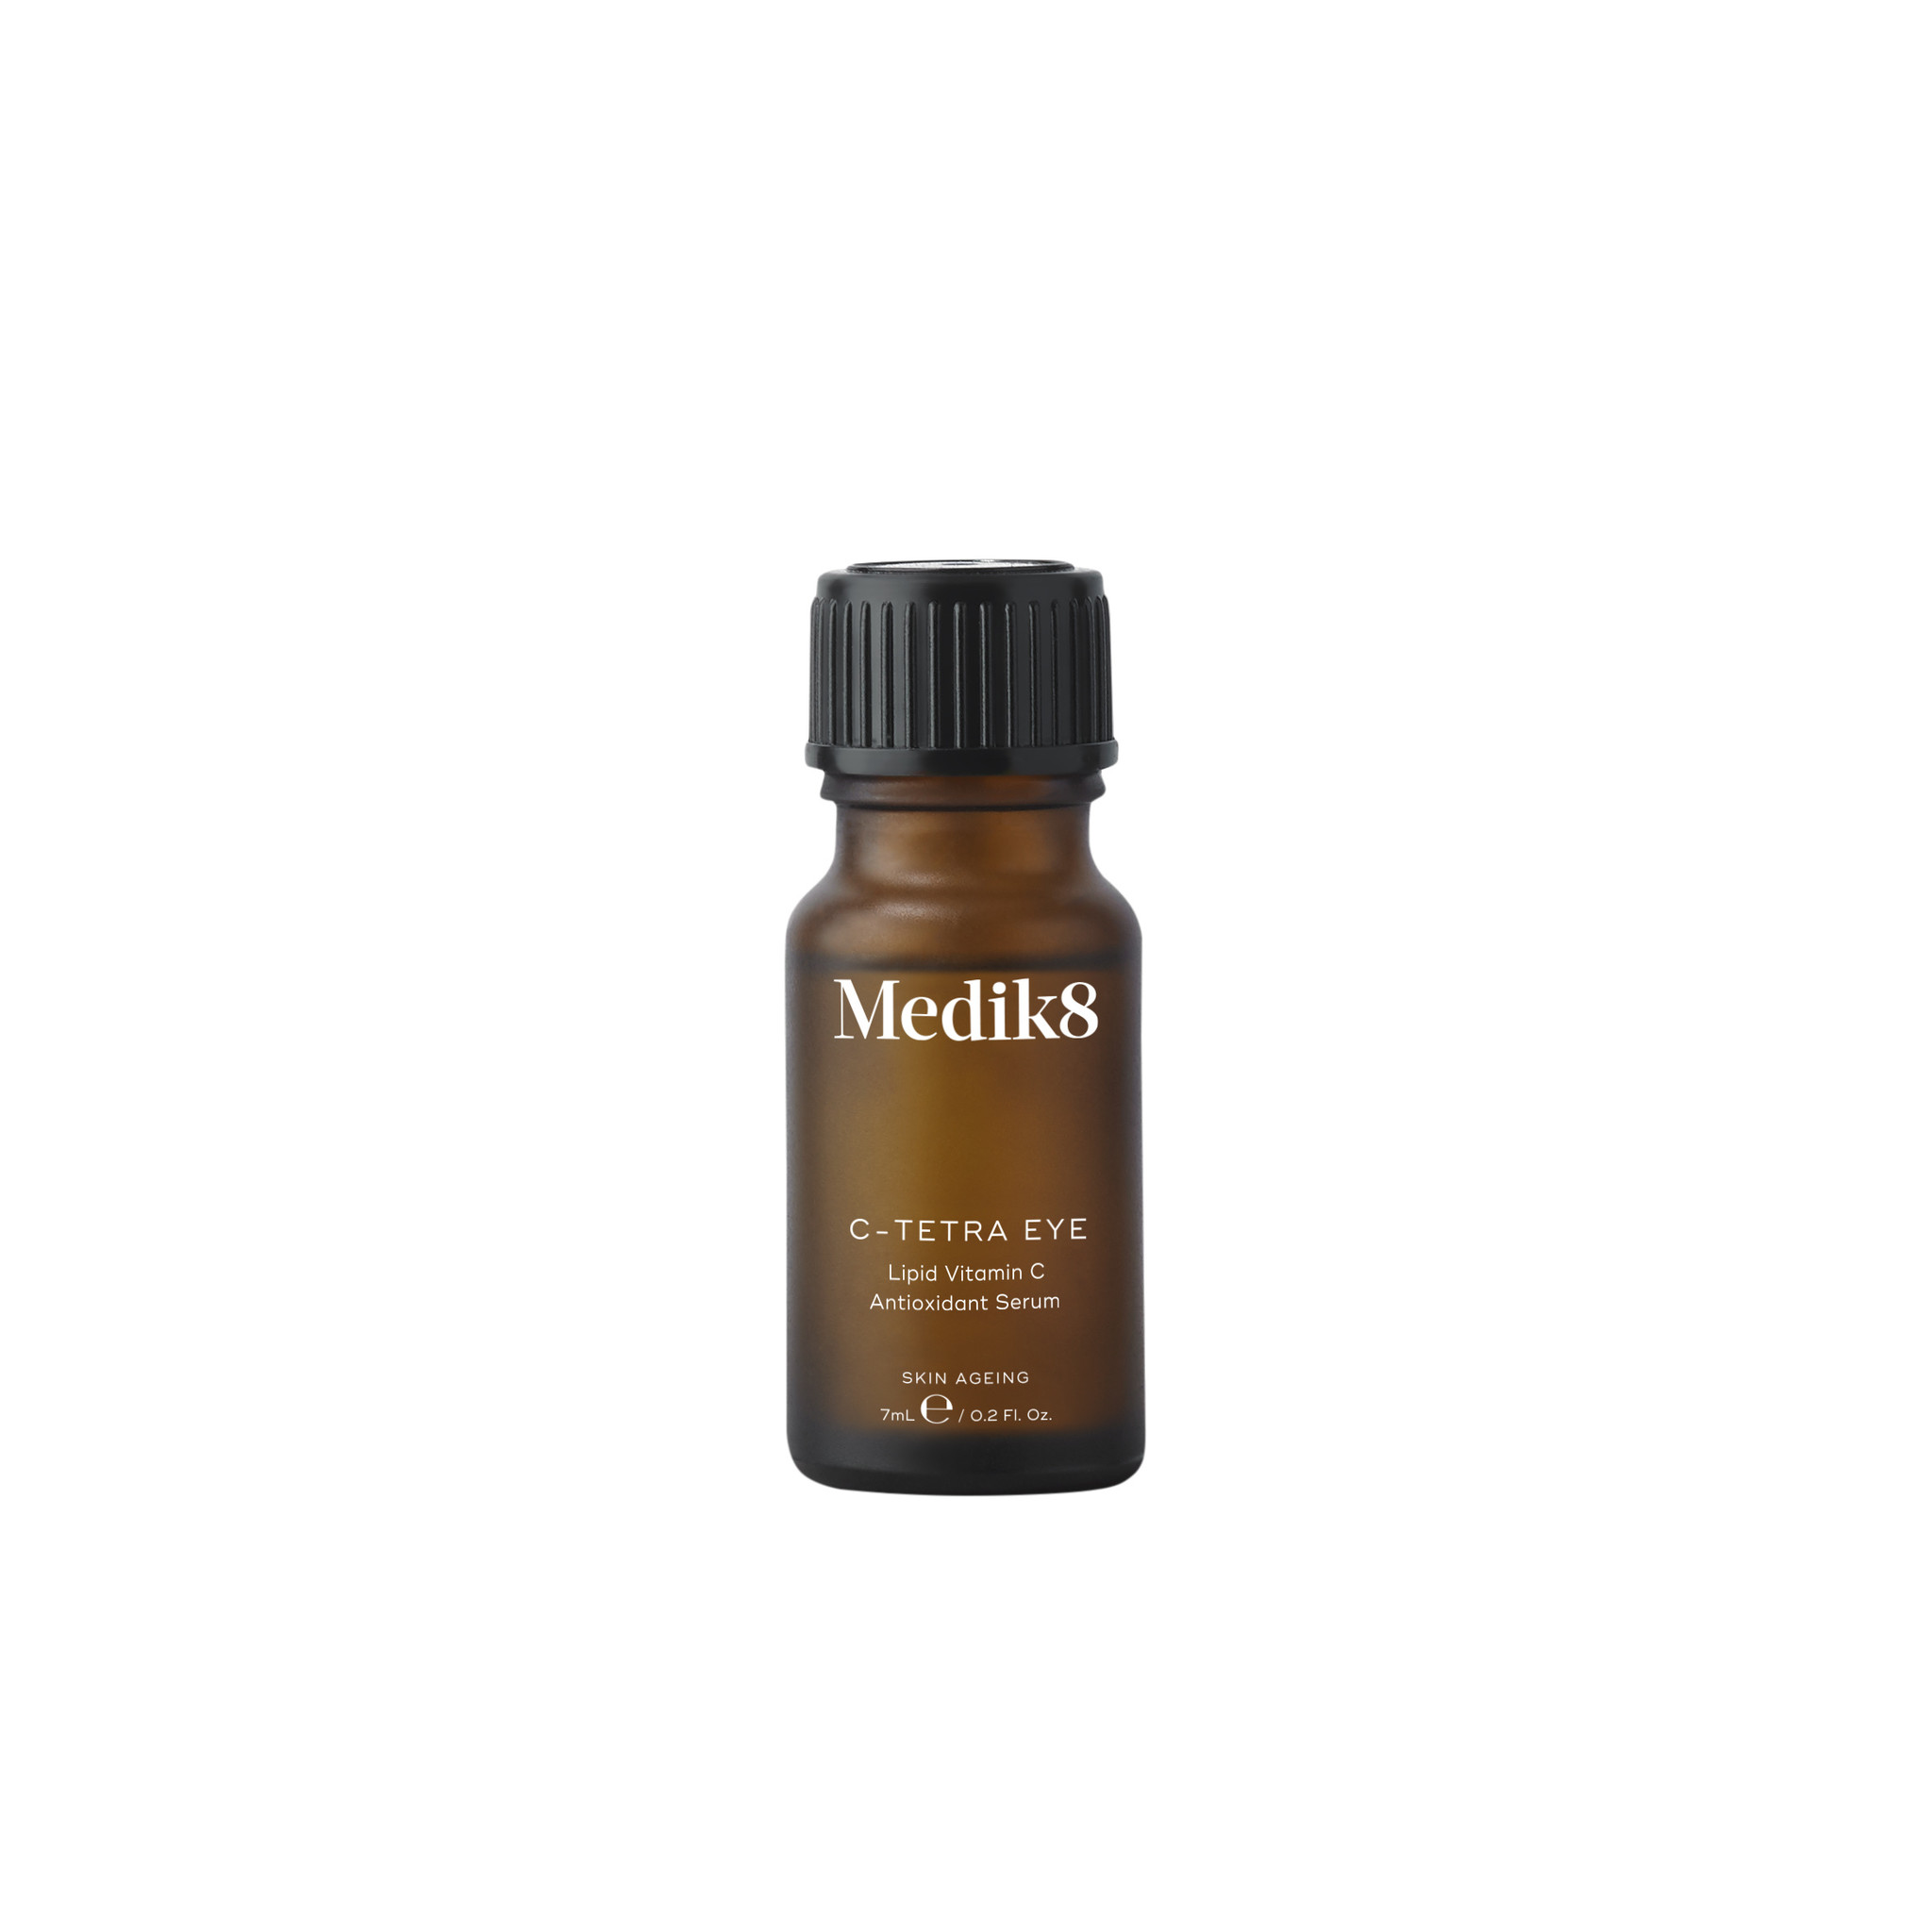 Medik8 C-Tetra Eye | Lipid Vitamin C Antioxidant Serum | 7ml